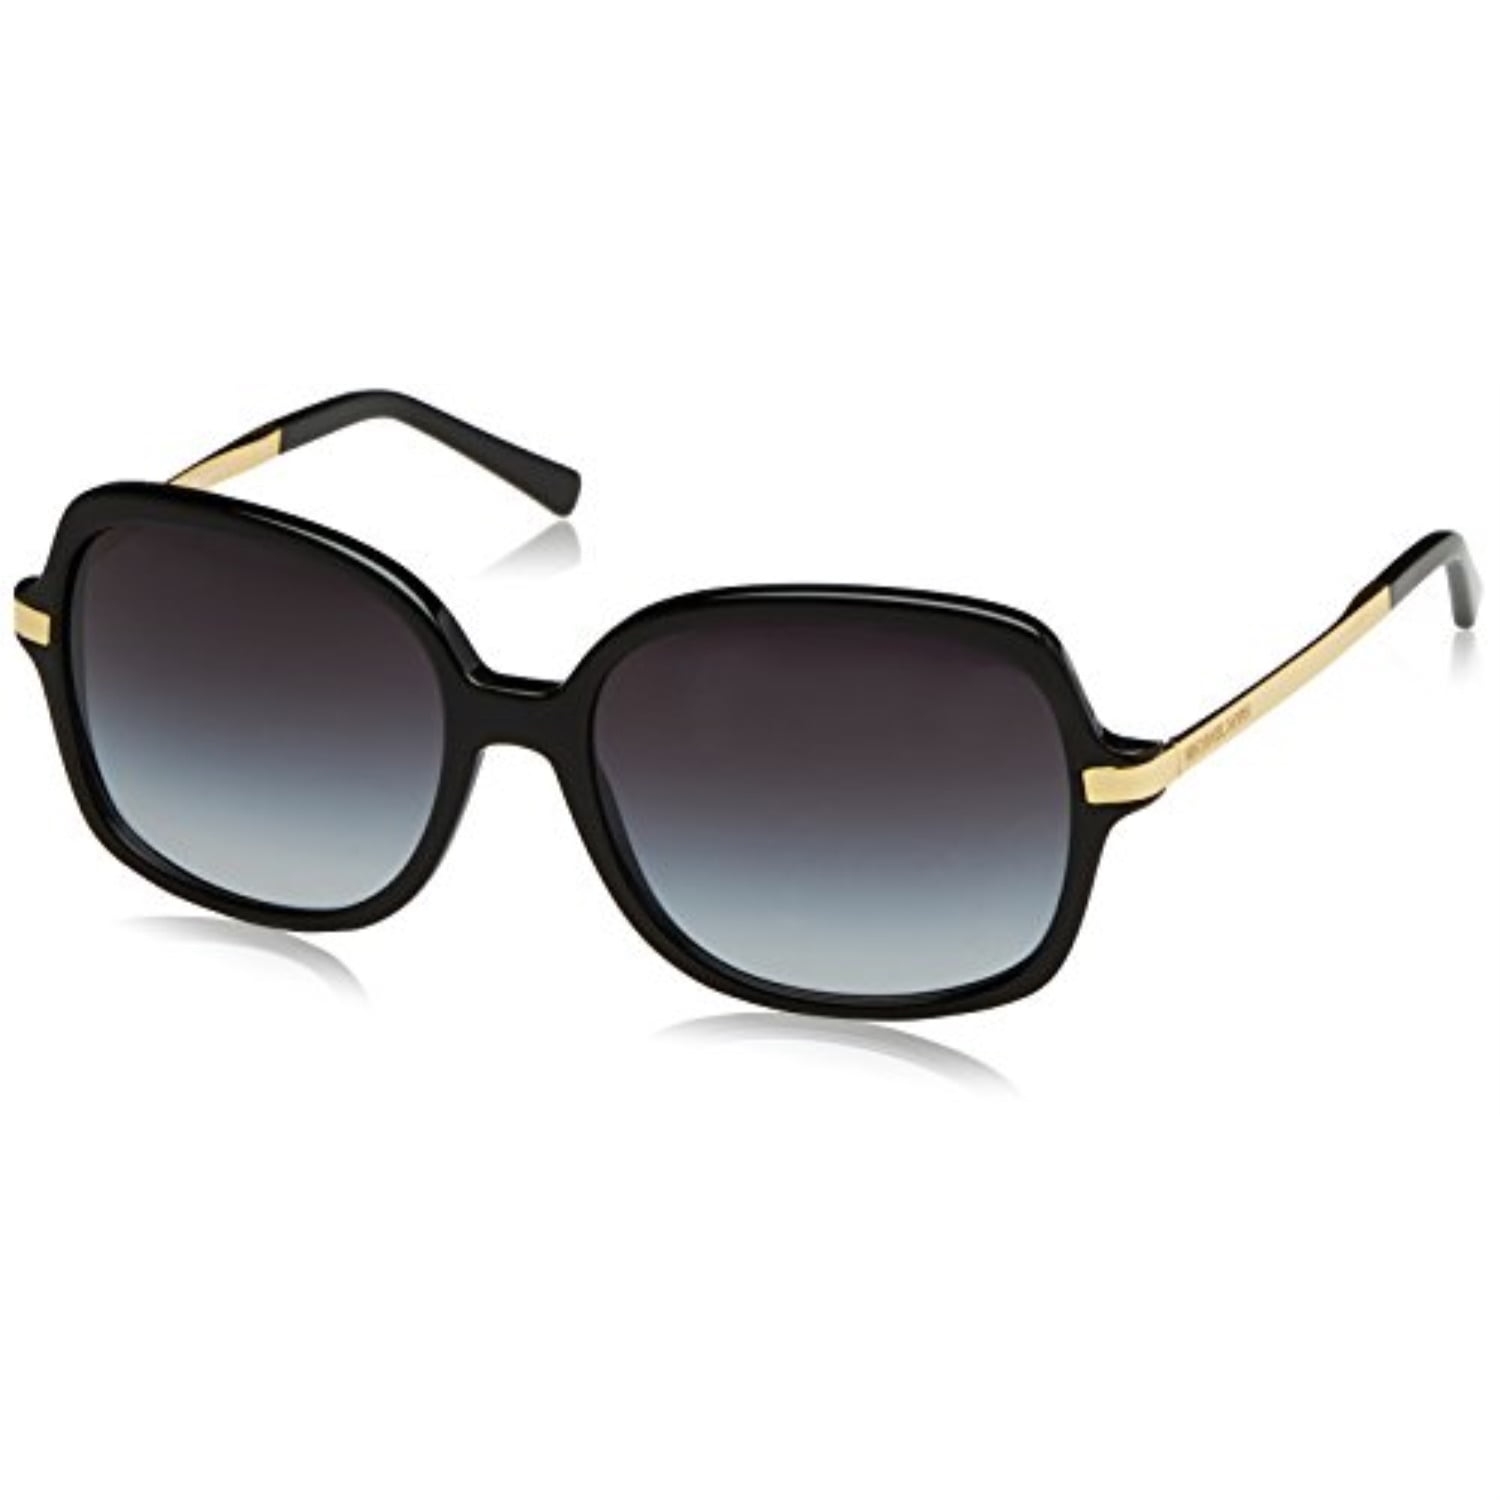 Top với hơn 65 michael kors black and gold sunglasses tuyệt vời nhất   trieuson5